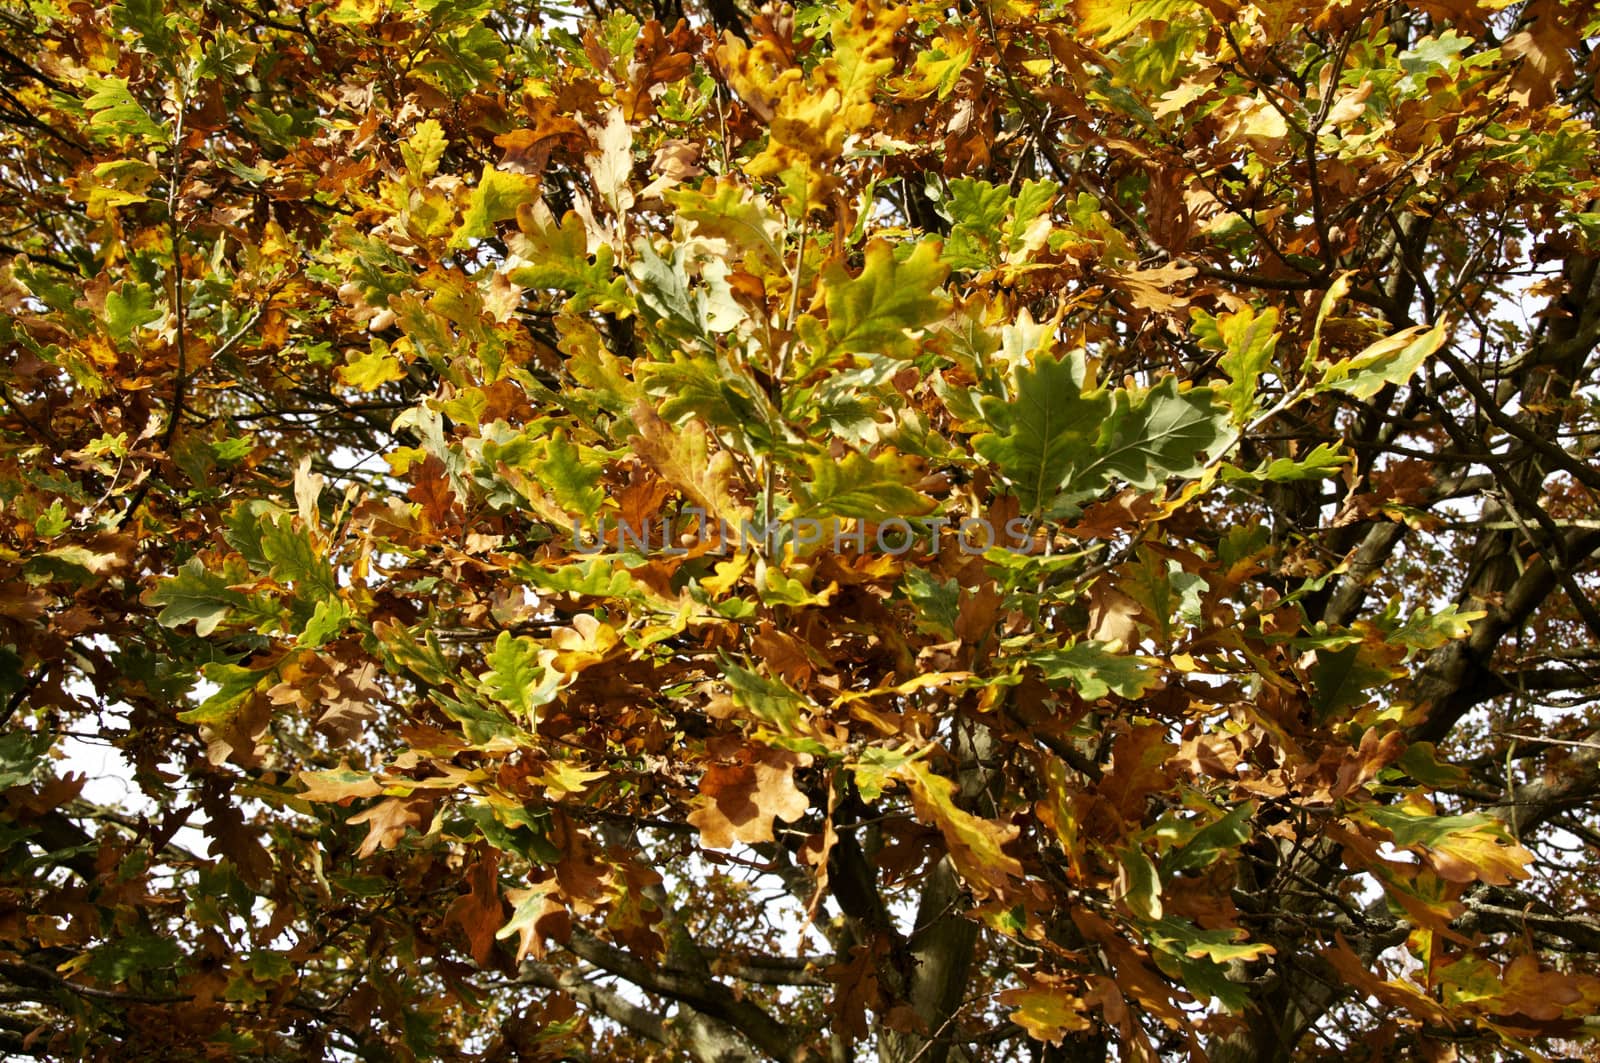 Autmn leaves on the tree.